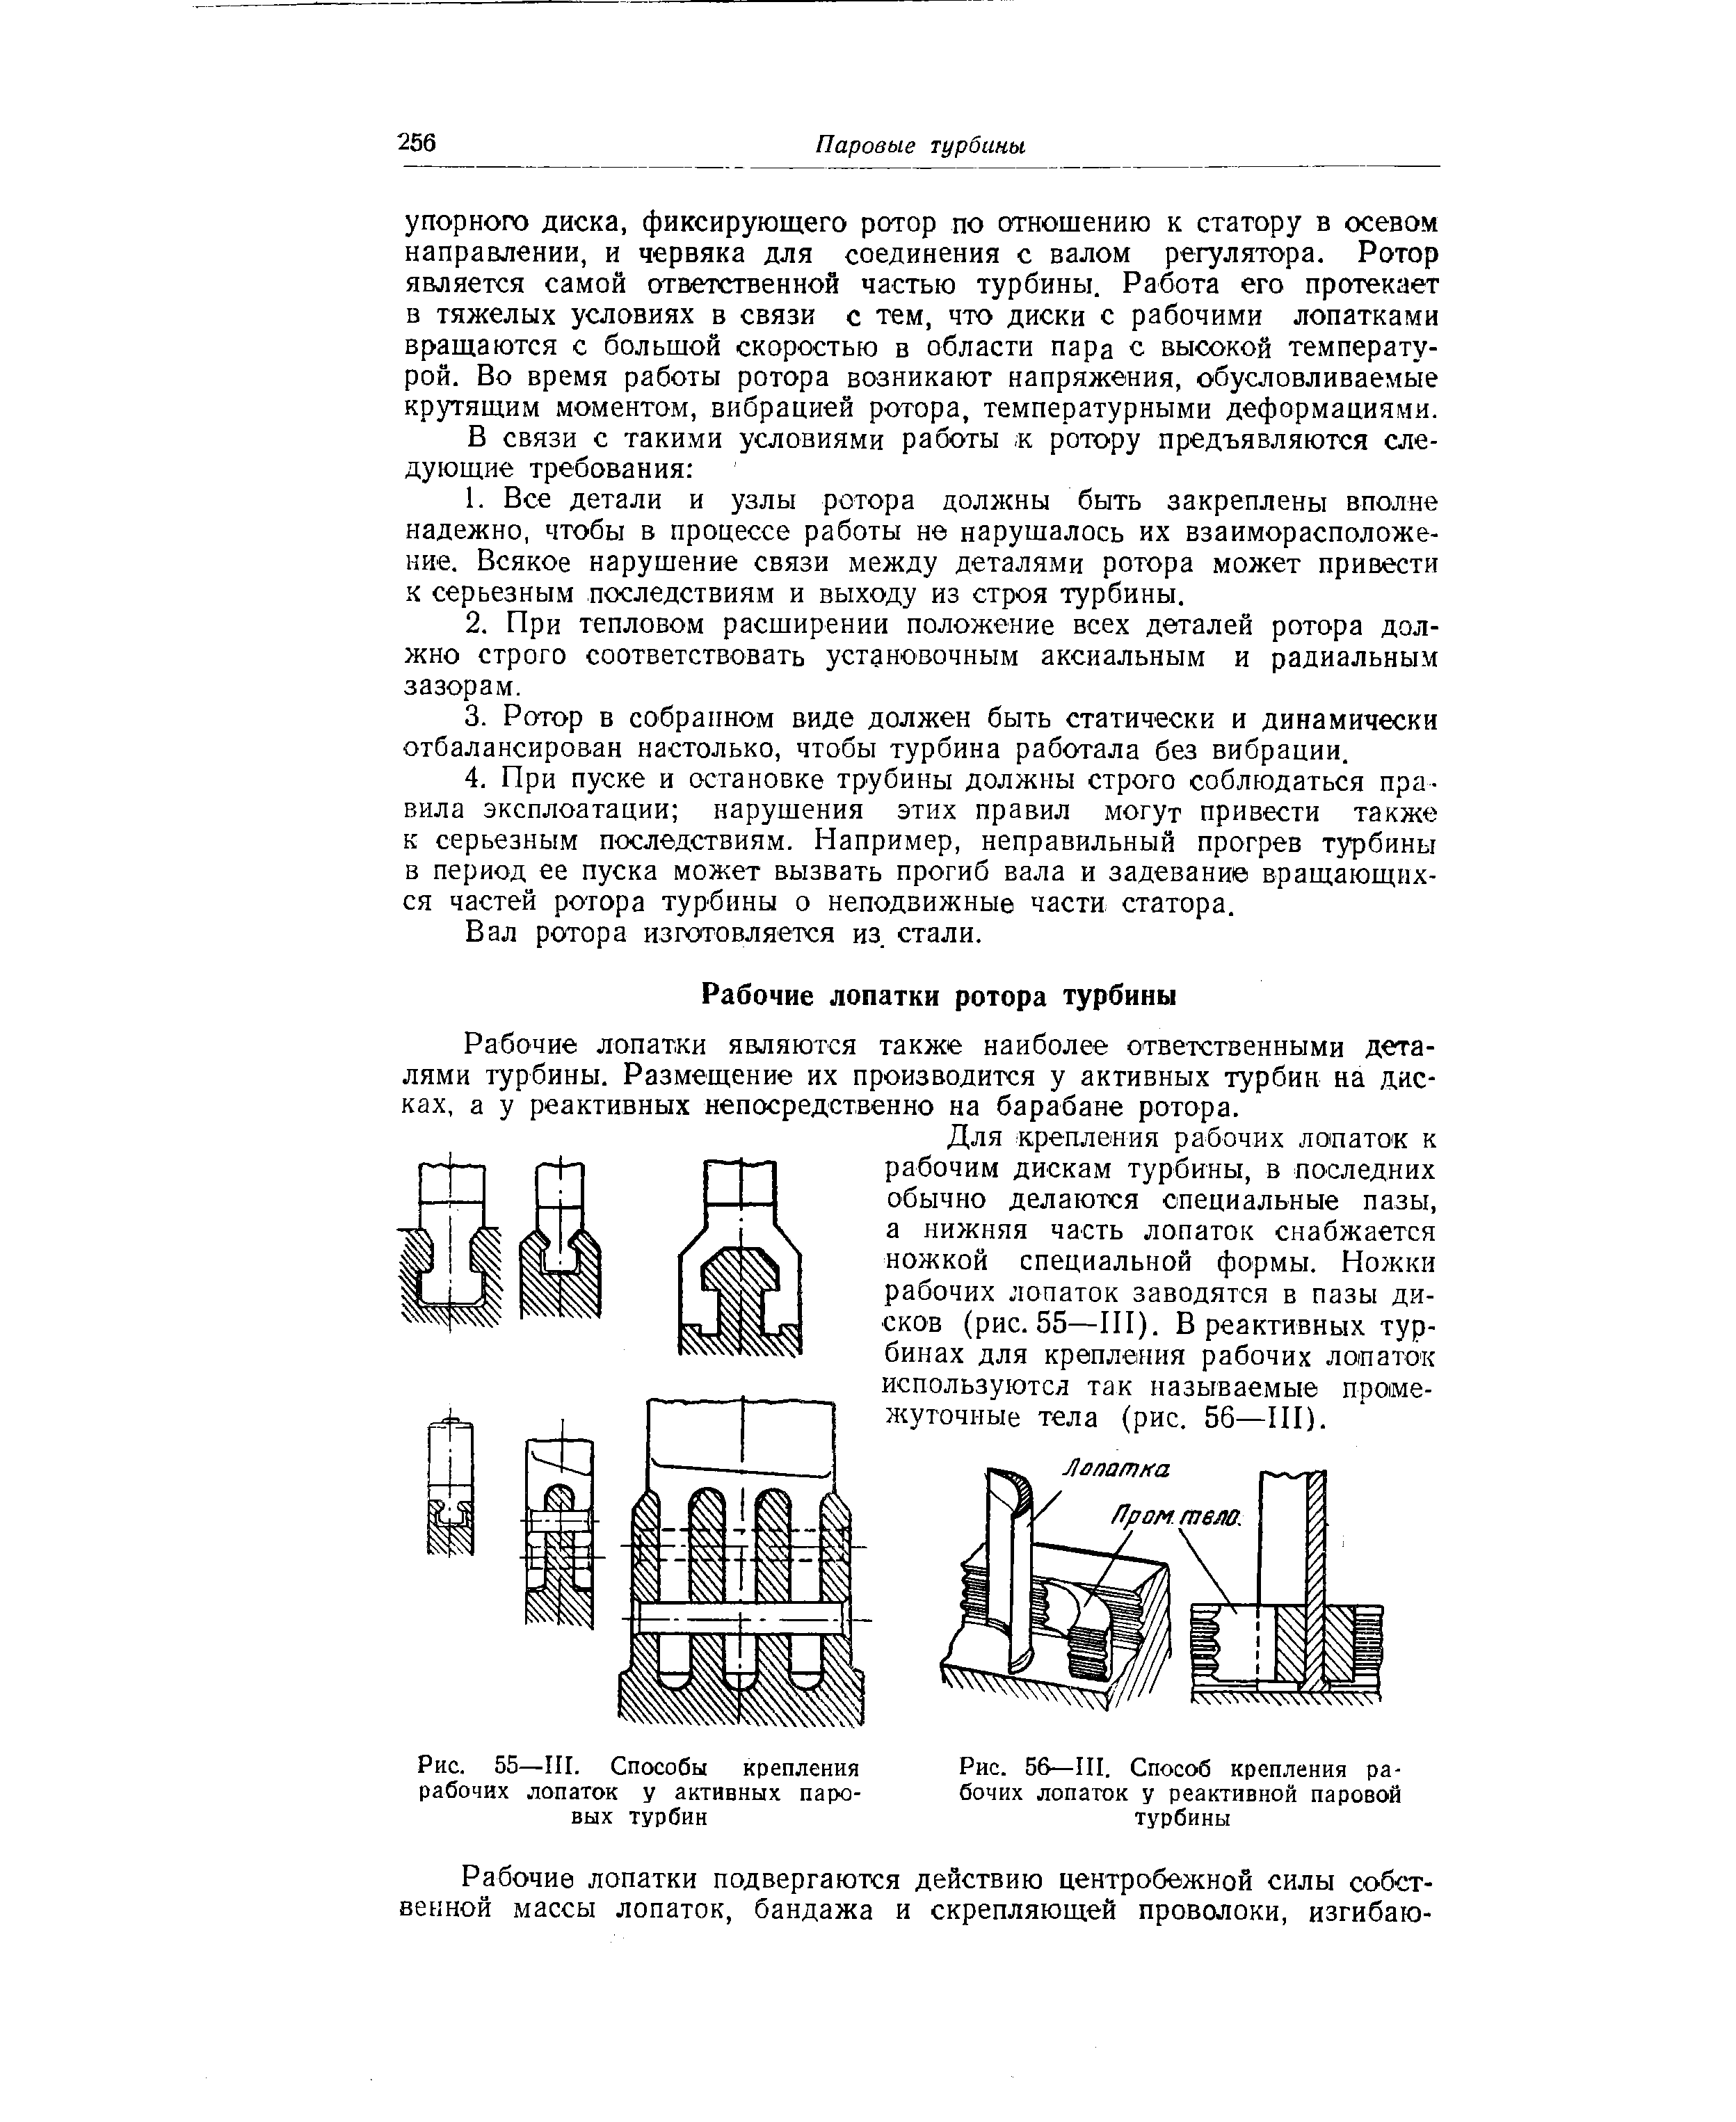 Рис. 56—III. Способ крепления рабочих лопаток у реактивной паровой турбины
